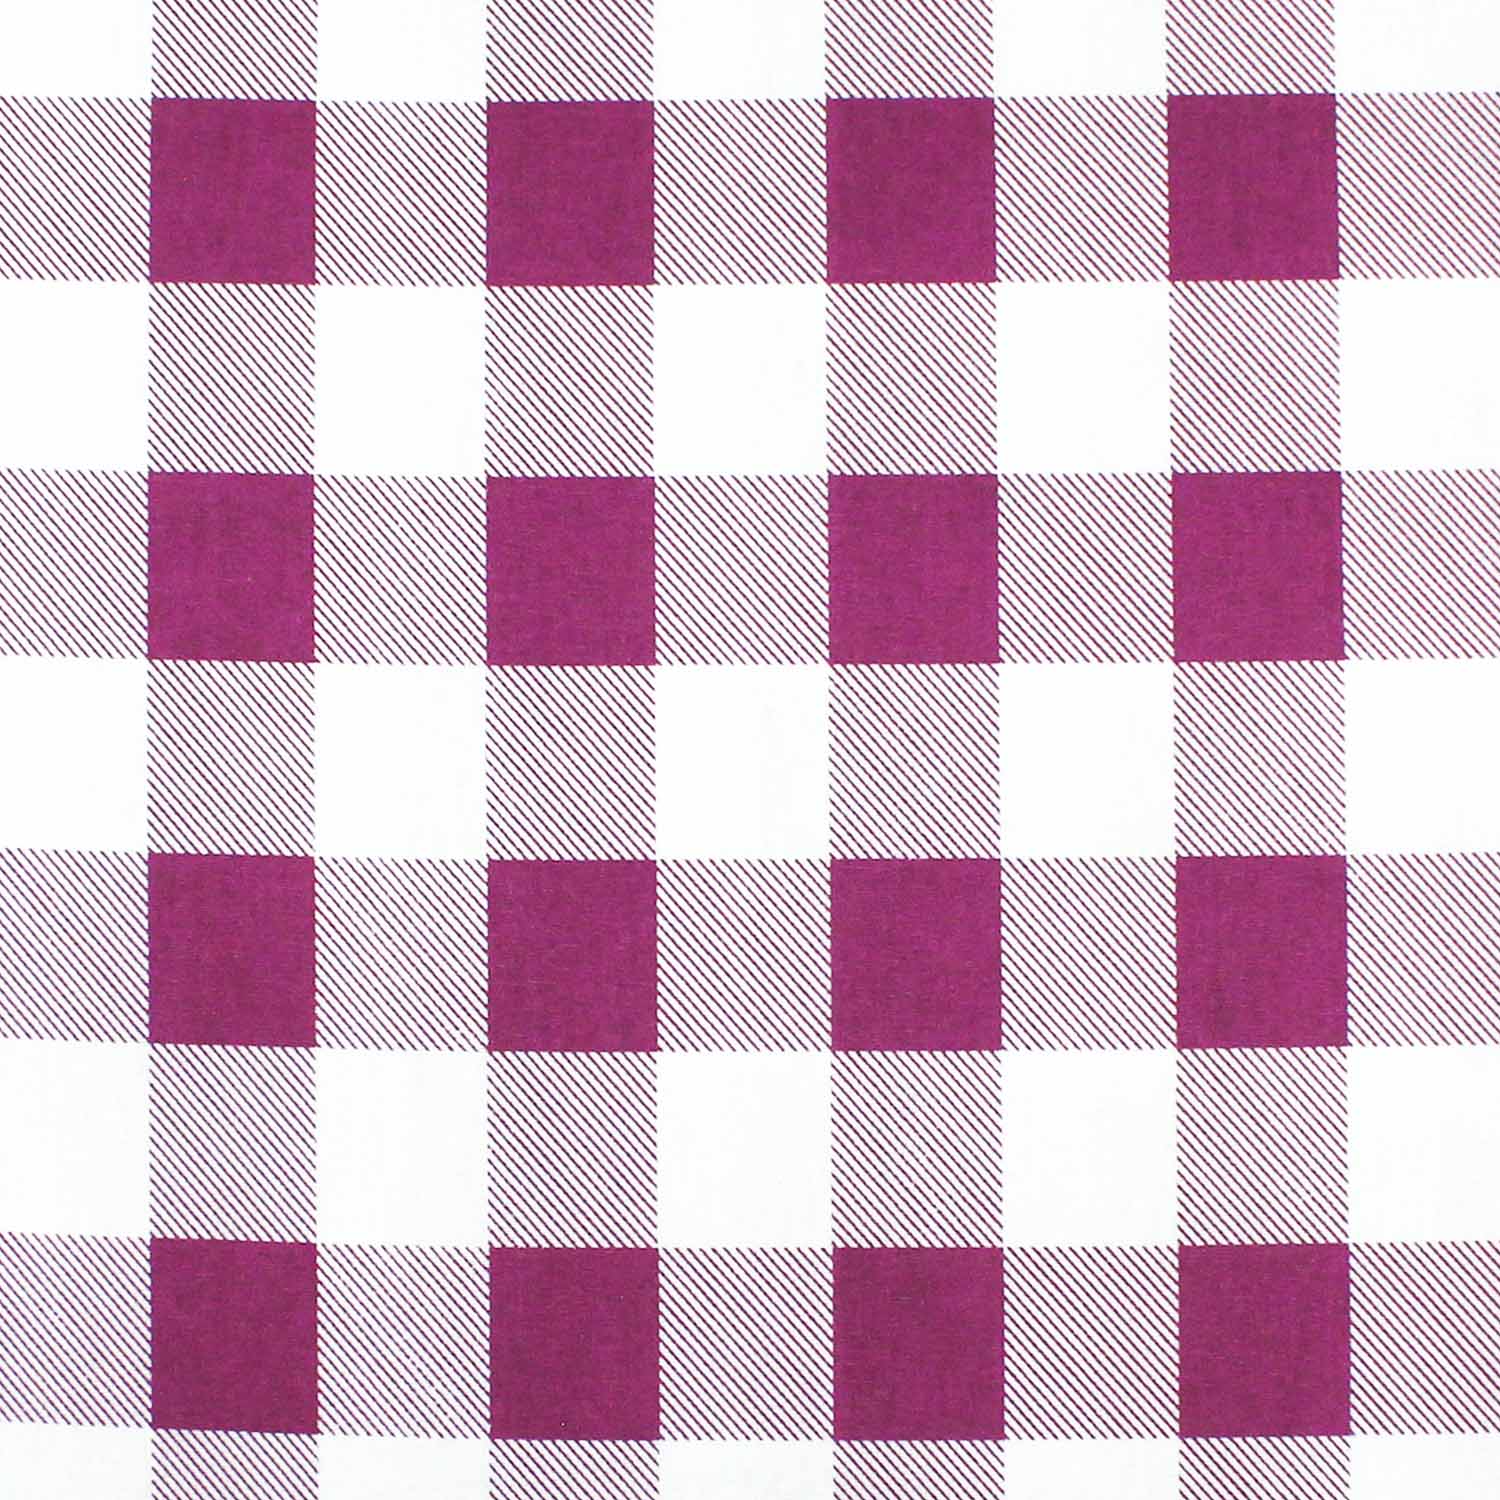 tecido-tricoline-textura-xadrez-grande-magenta-della-aviamentos-10933